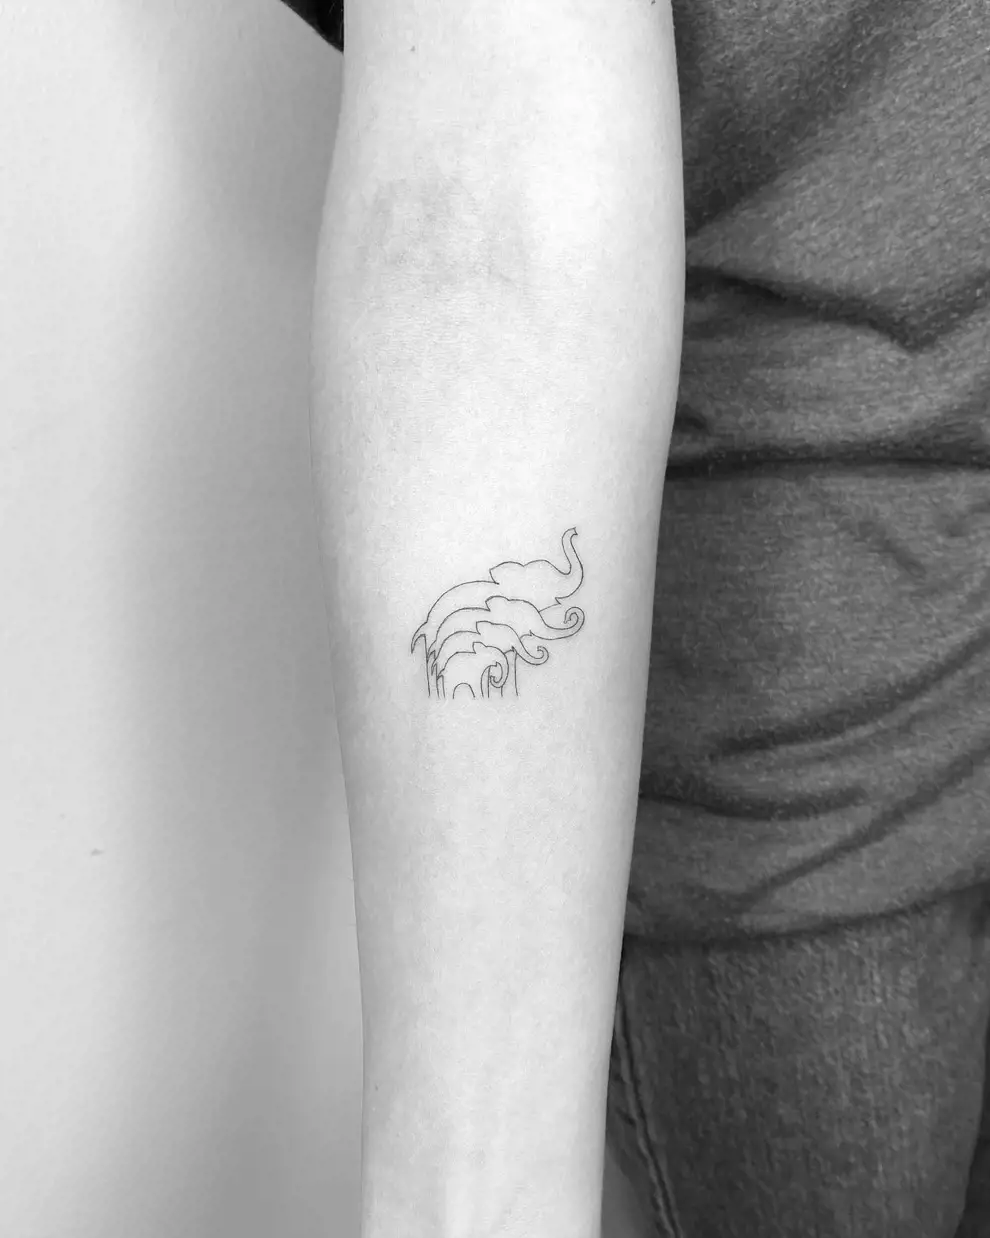 Tatuajes minimalistas familia: elefantes